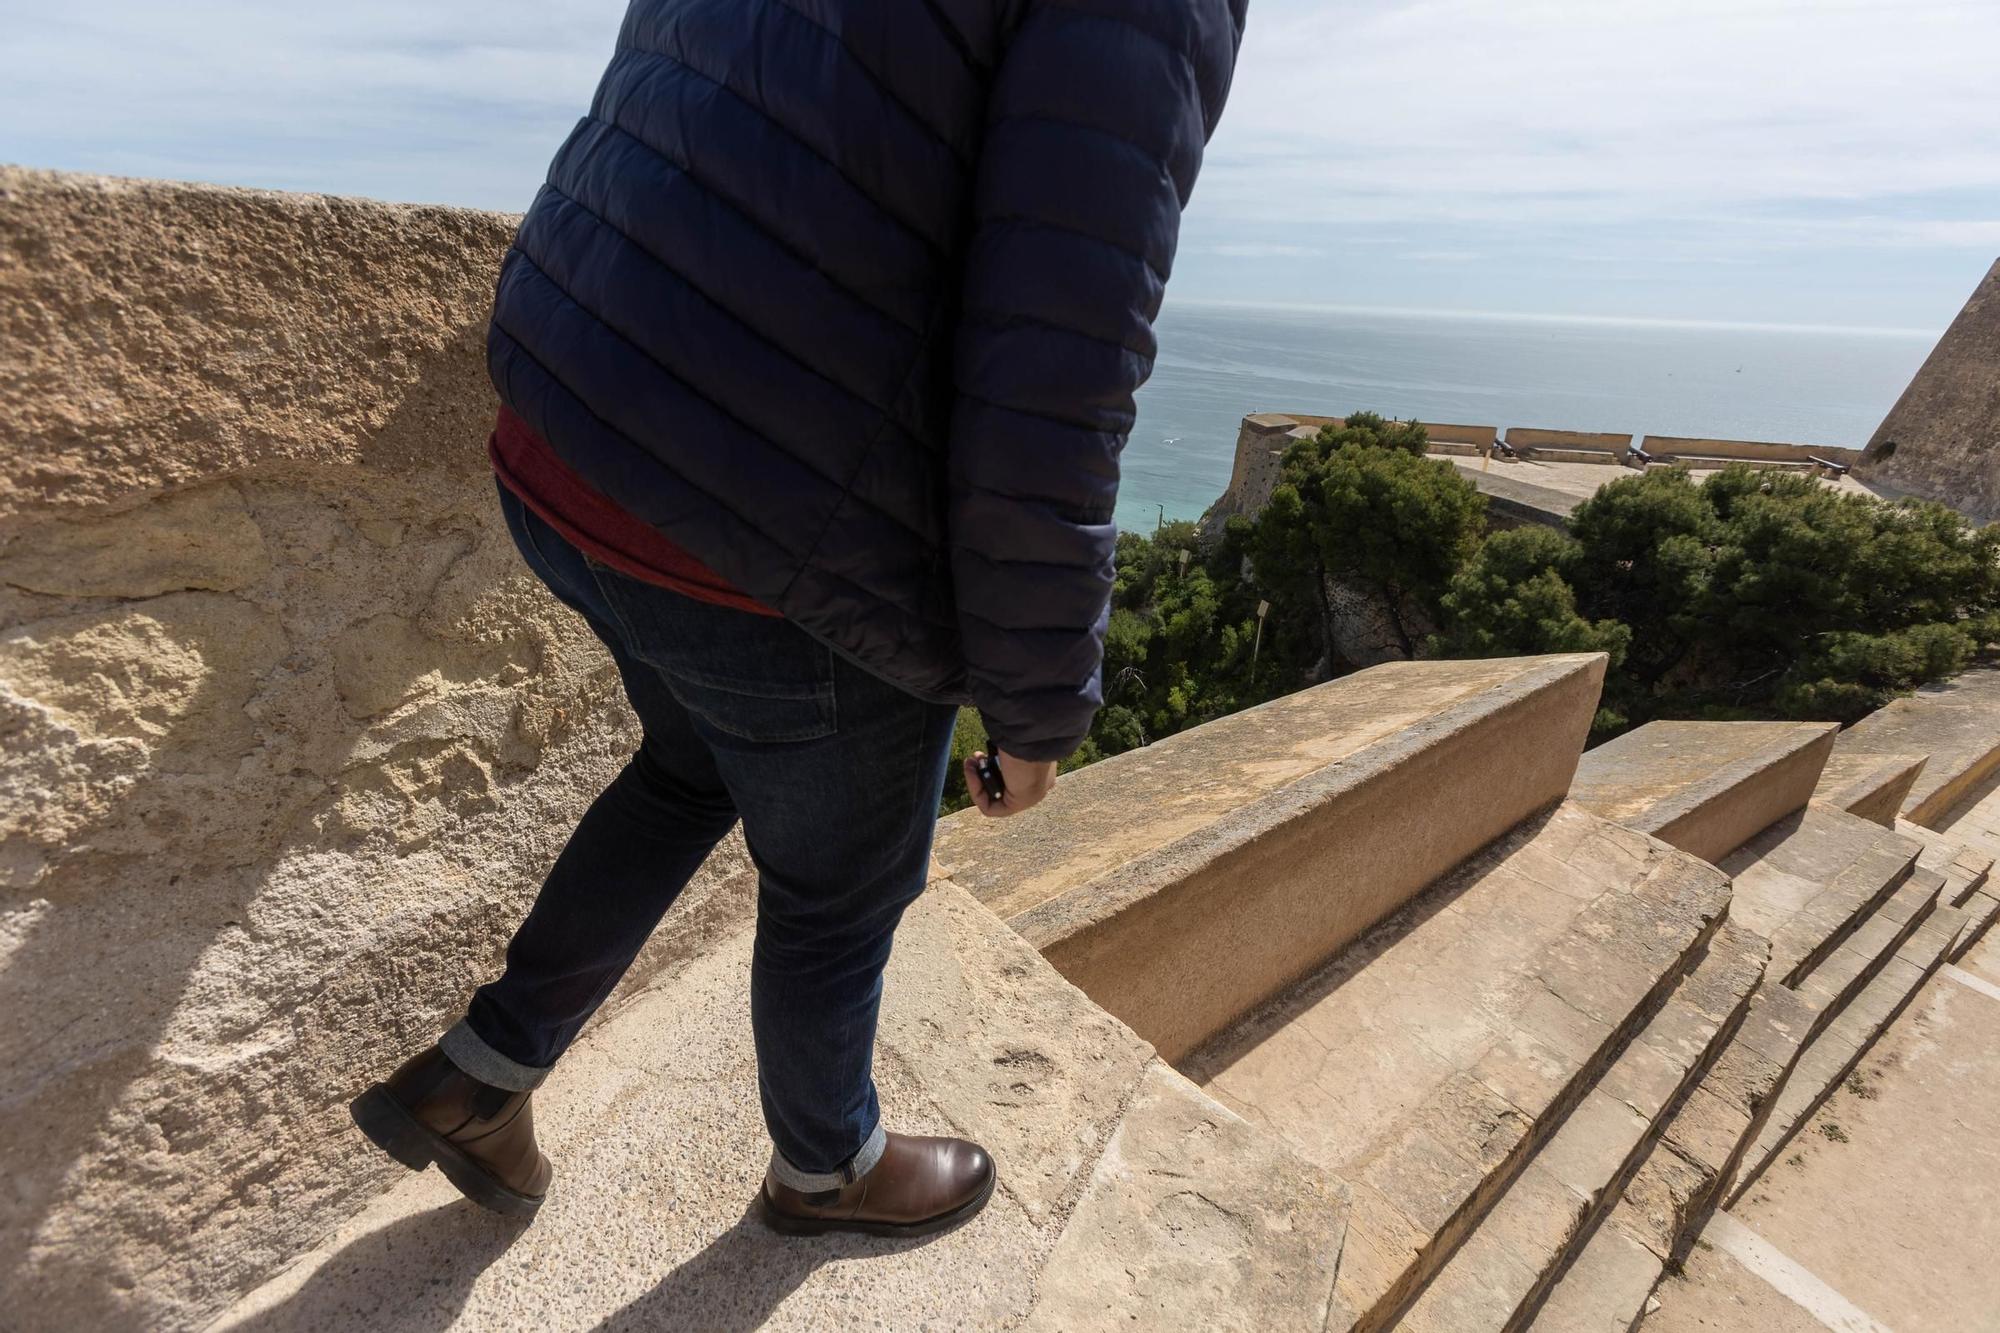 El castillo de Santa Bárbara de Alicante revisará la seguridad tras la muerte accidental de una mujer